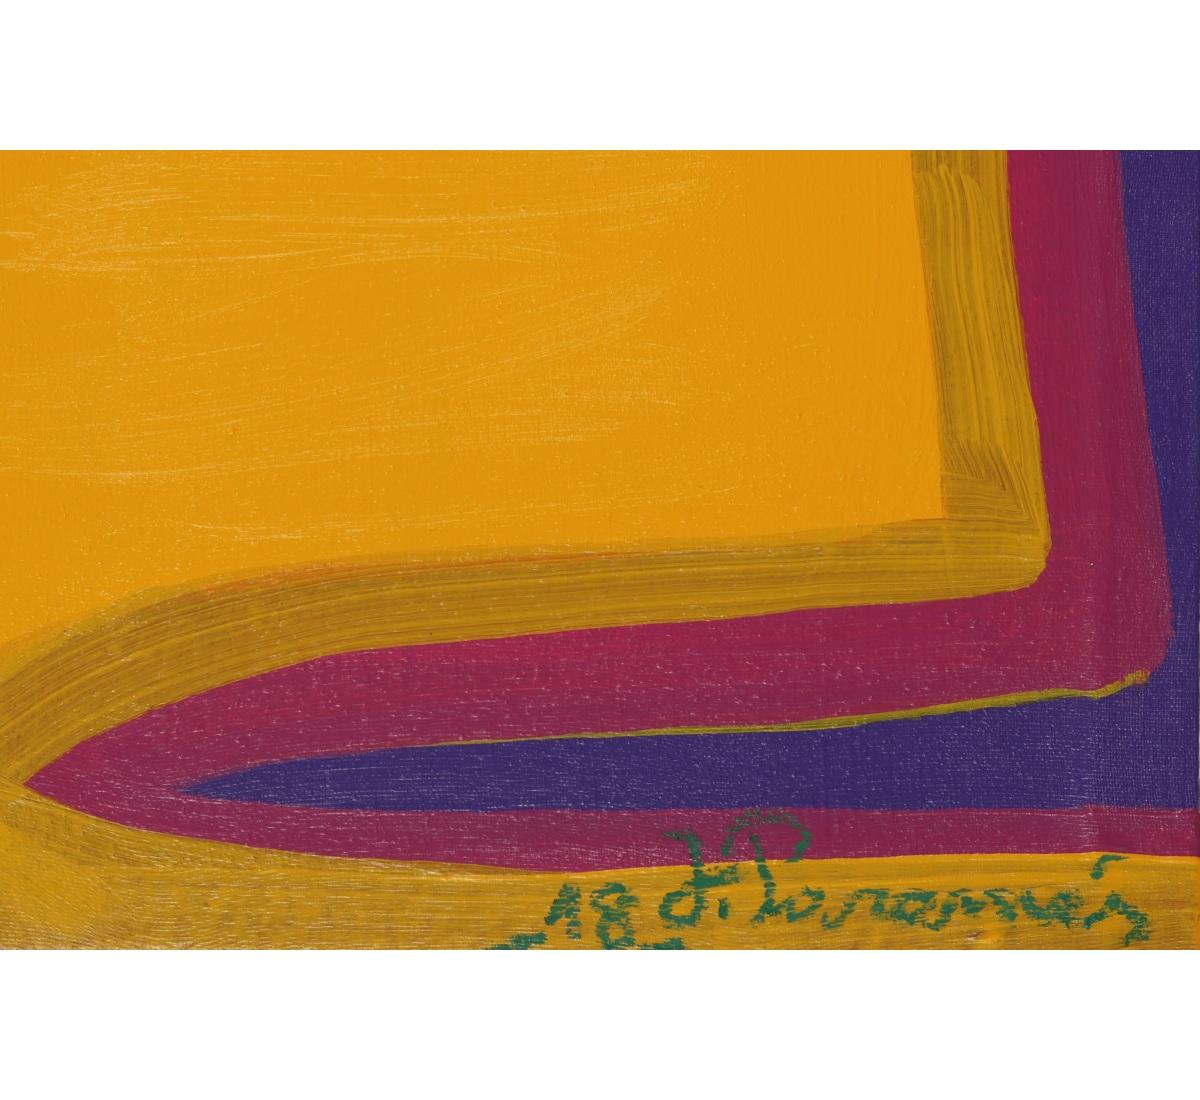 Composition expressionniste abstraite acrilique sur toile « The Magical Colors » signée - Painting de JParames